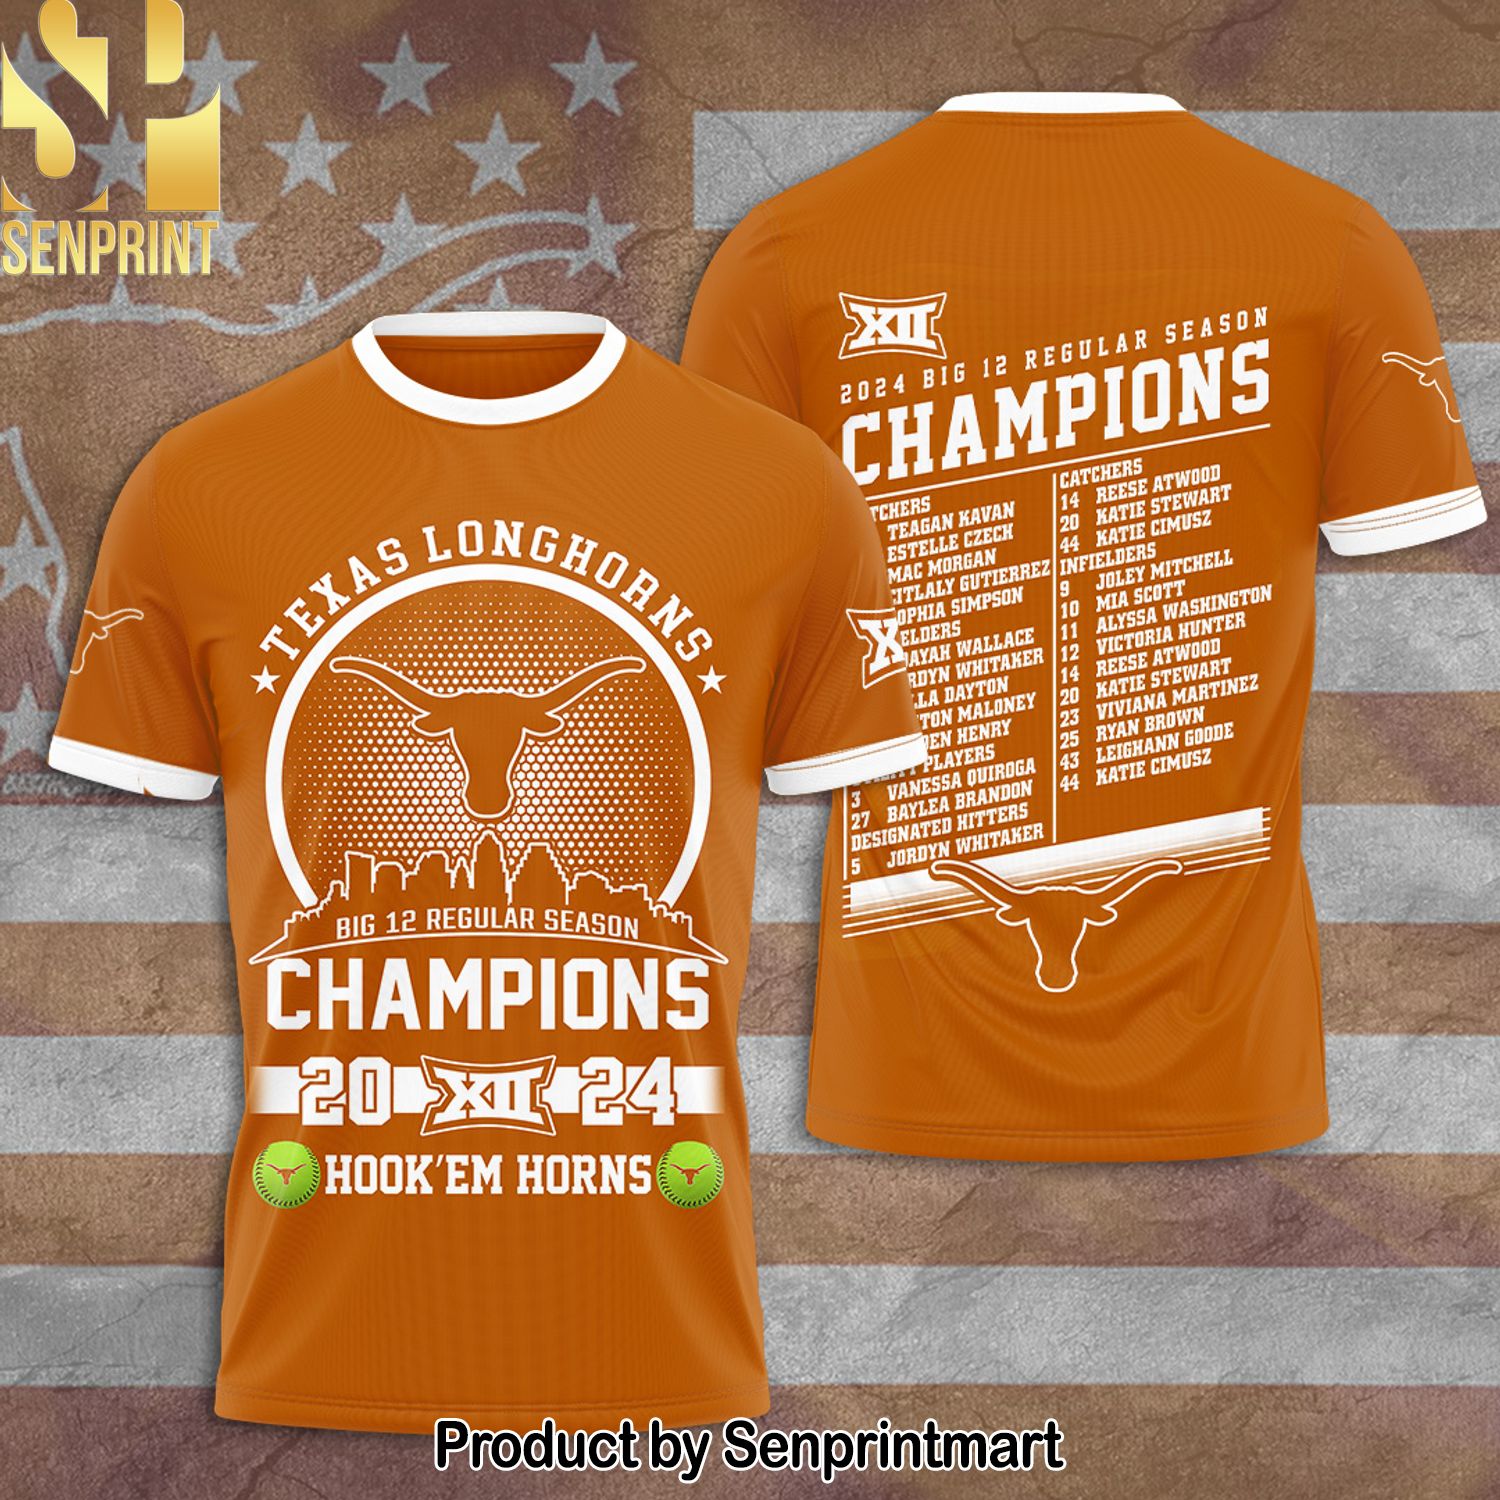 Texas Longhorns Women’s Baseball Full Printing Shirt – SEN0125